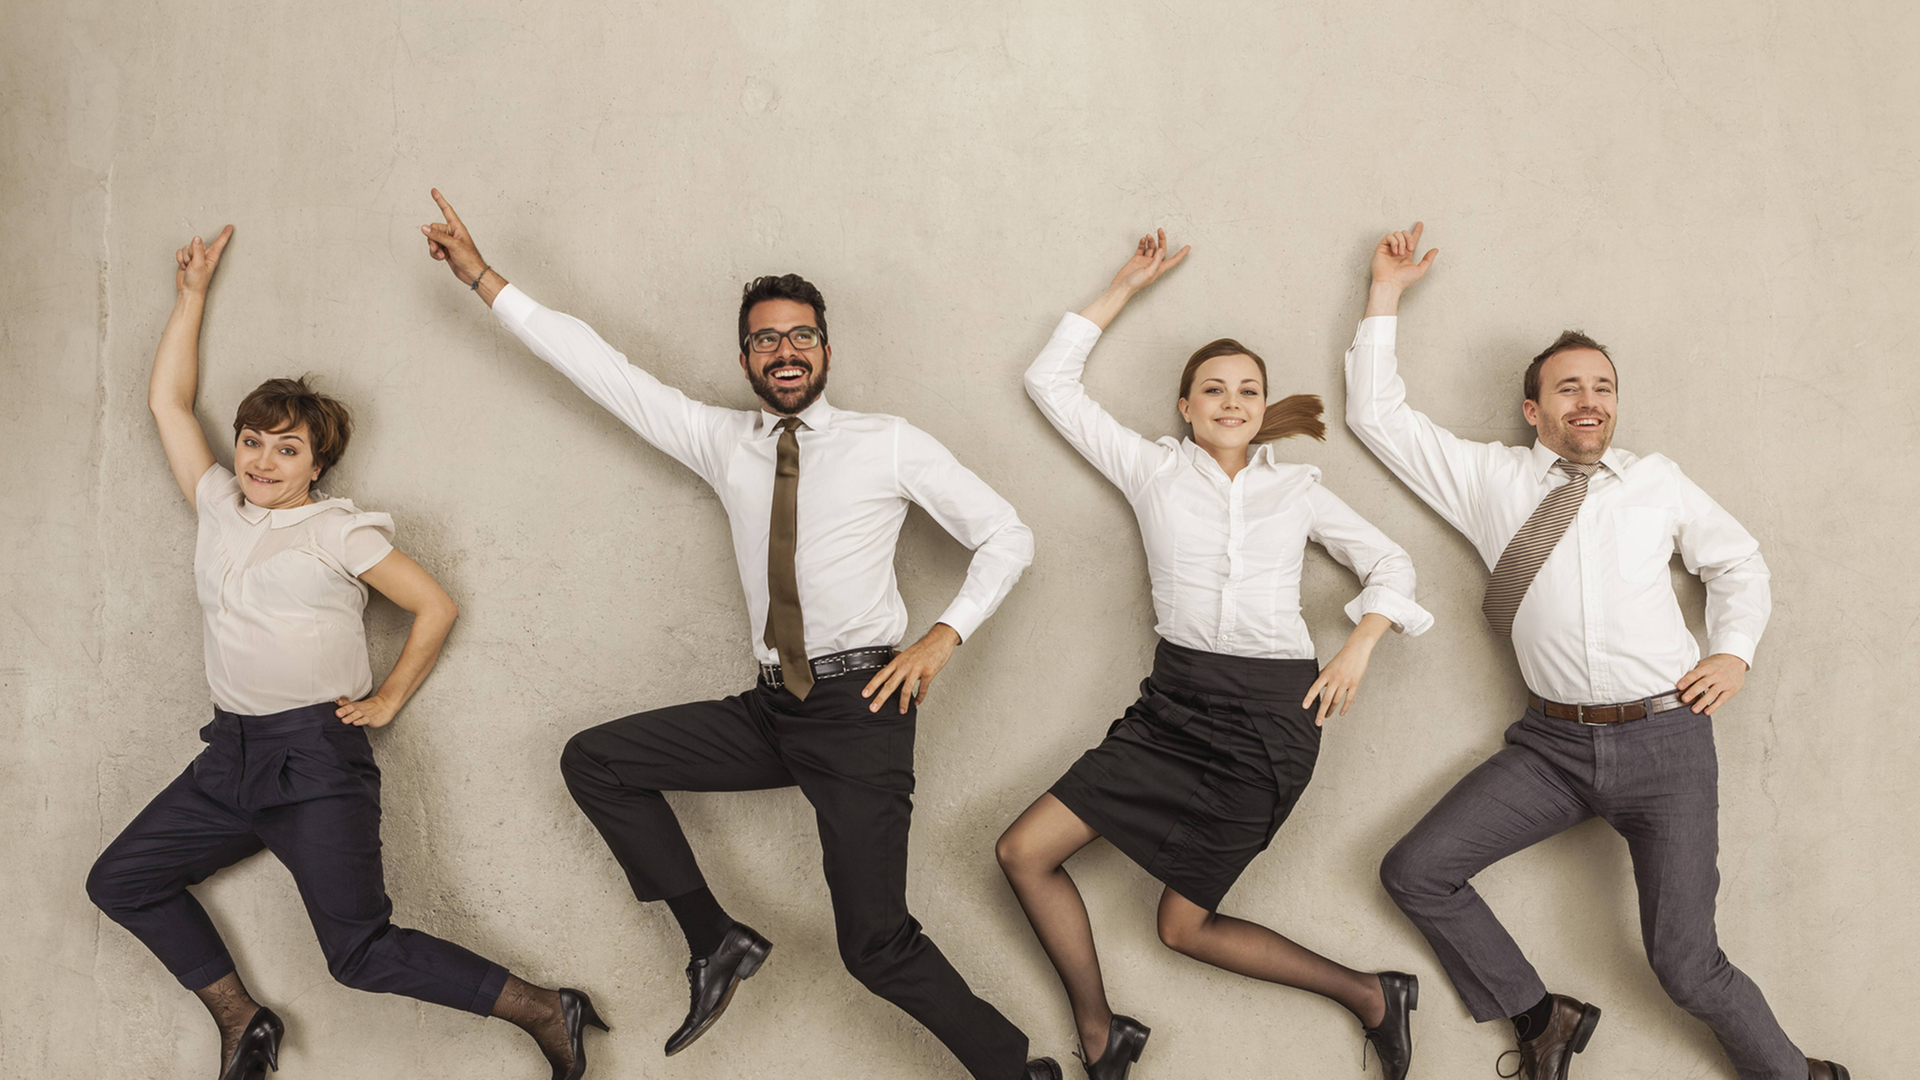 Menschen in Businesskleidung liegen auf dem Rücken, als würden sie durchs Büro tanzen